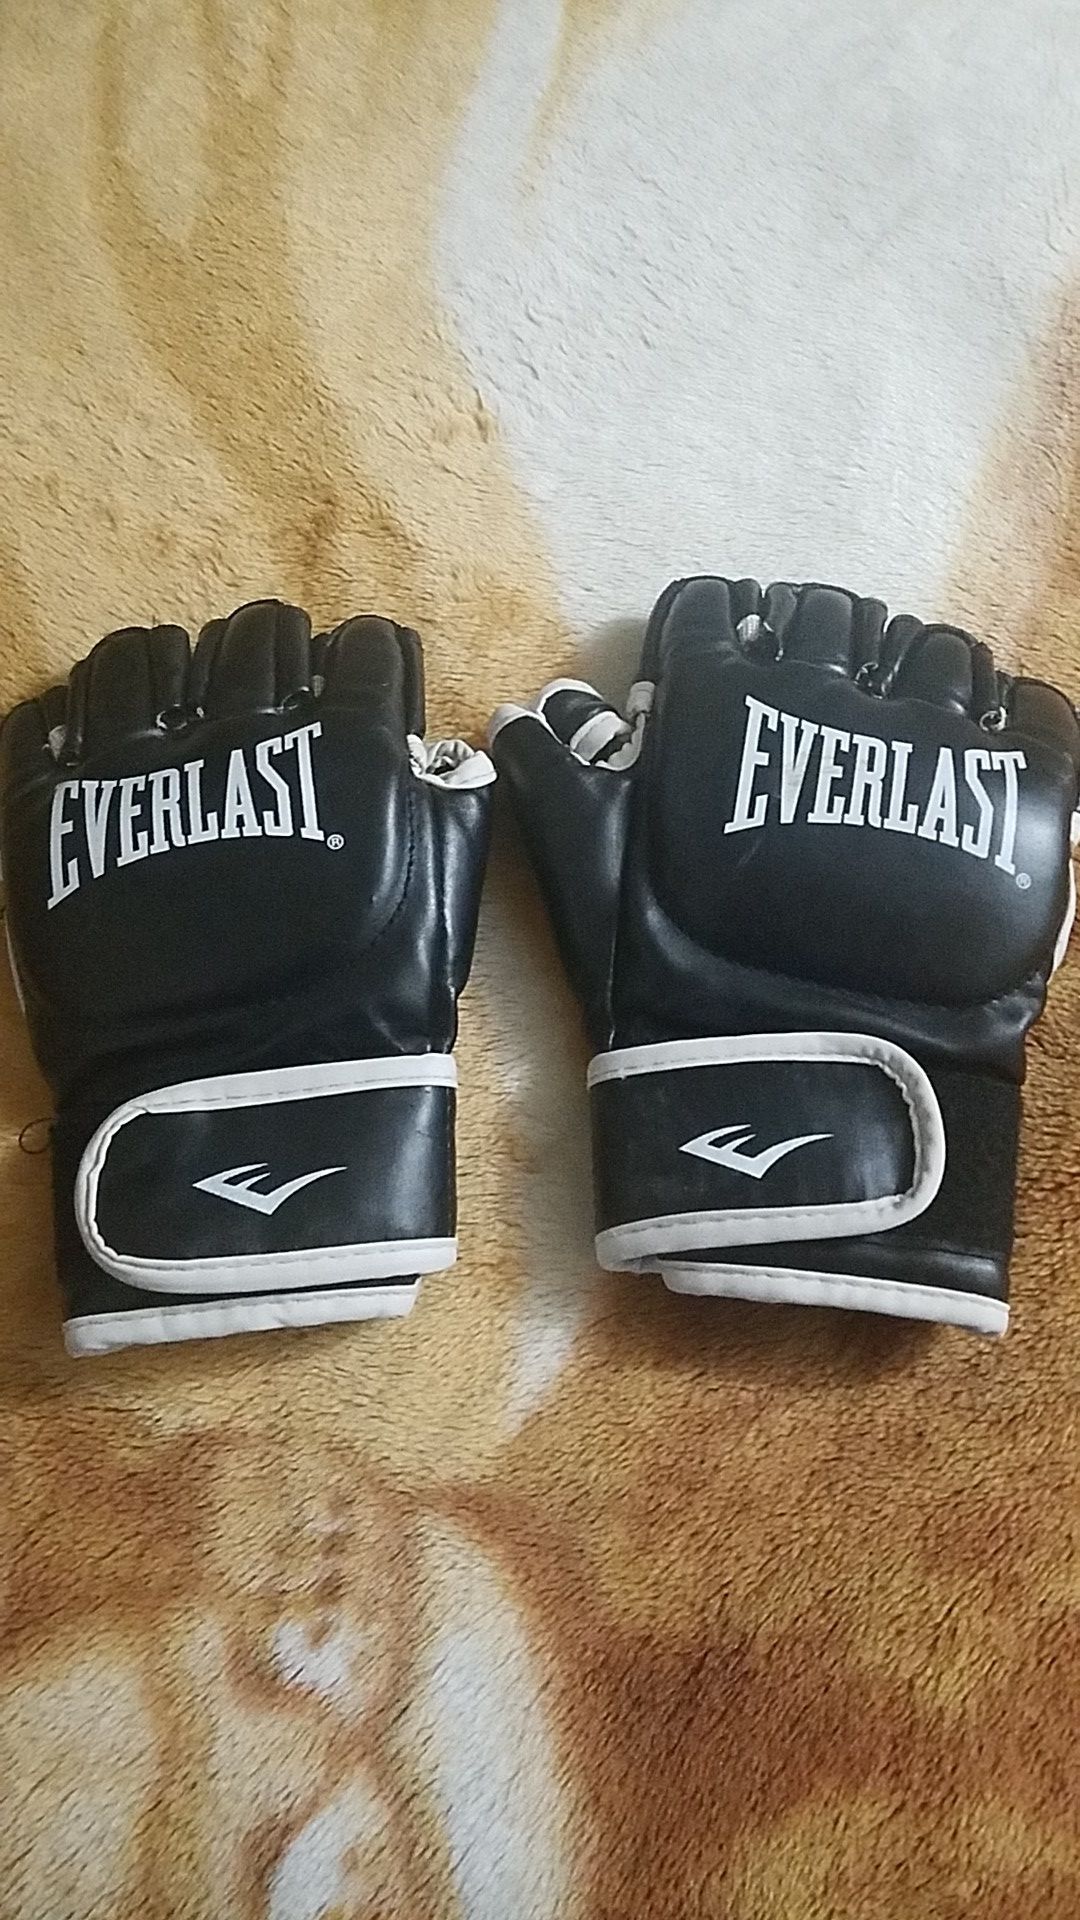 UFC fighting gloves